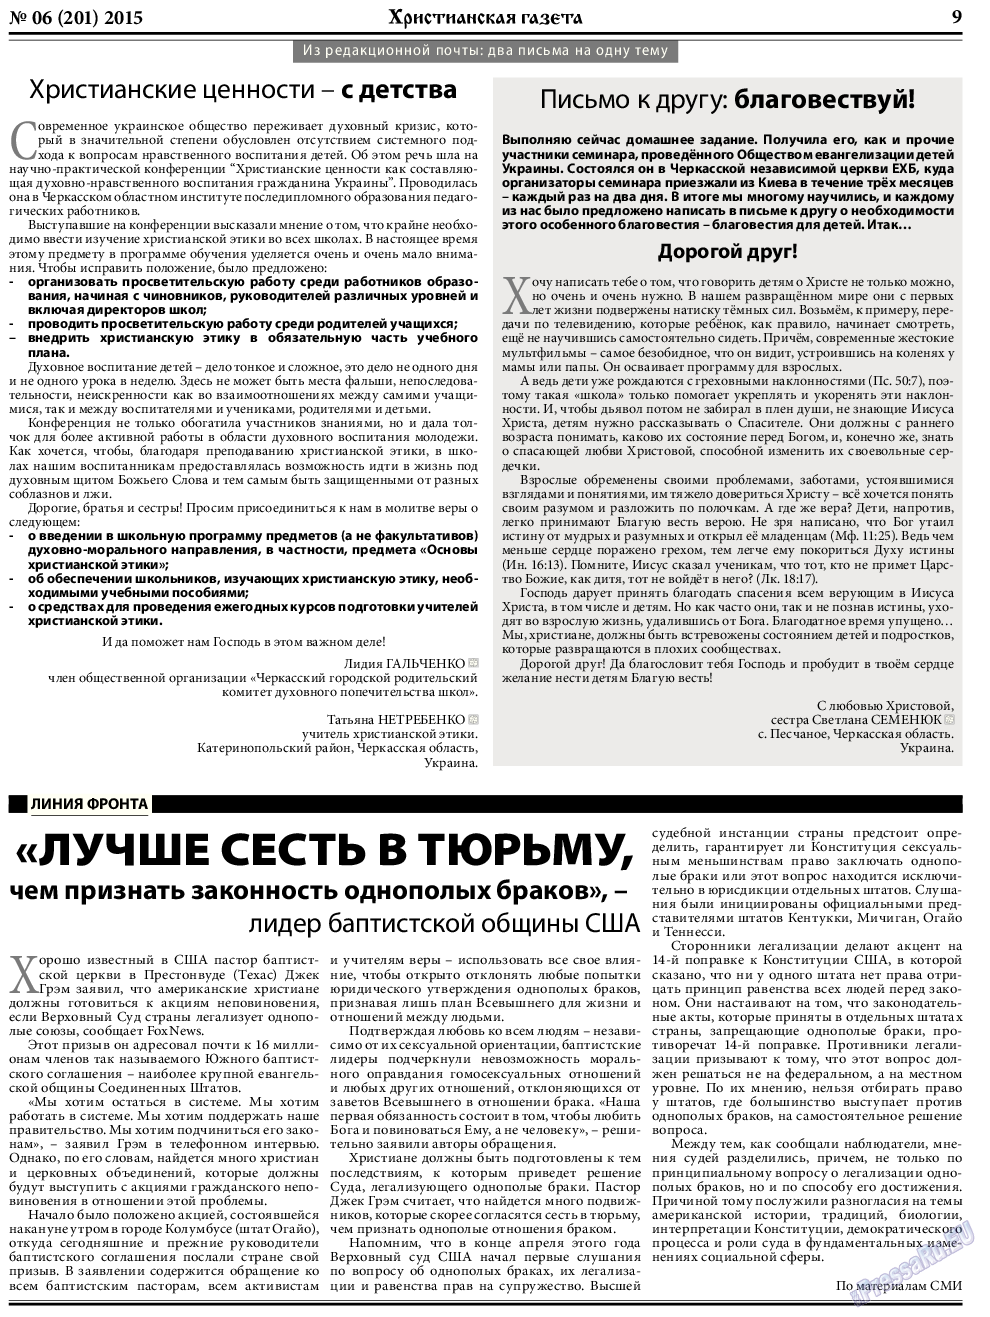 Христианская газета, газета. 2015 №6 стр.9